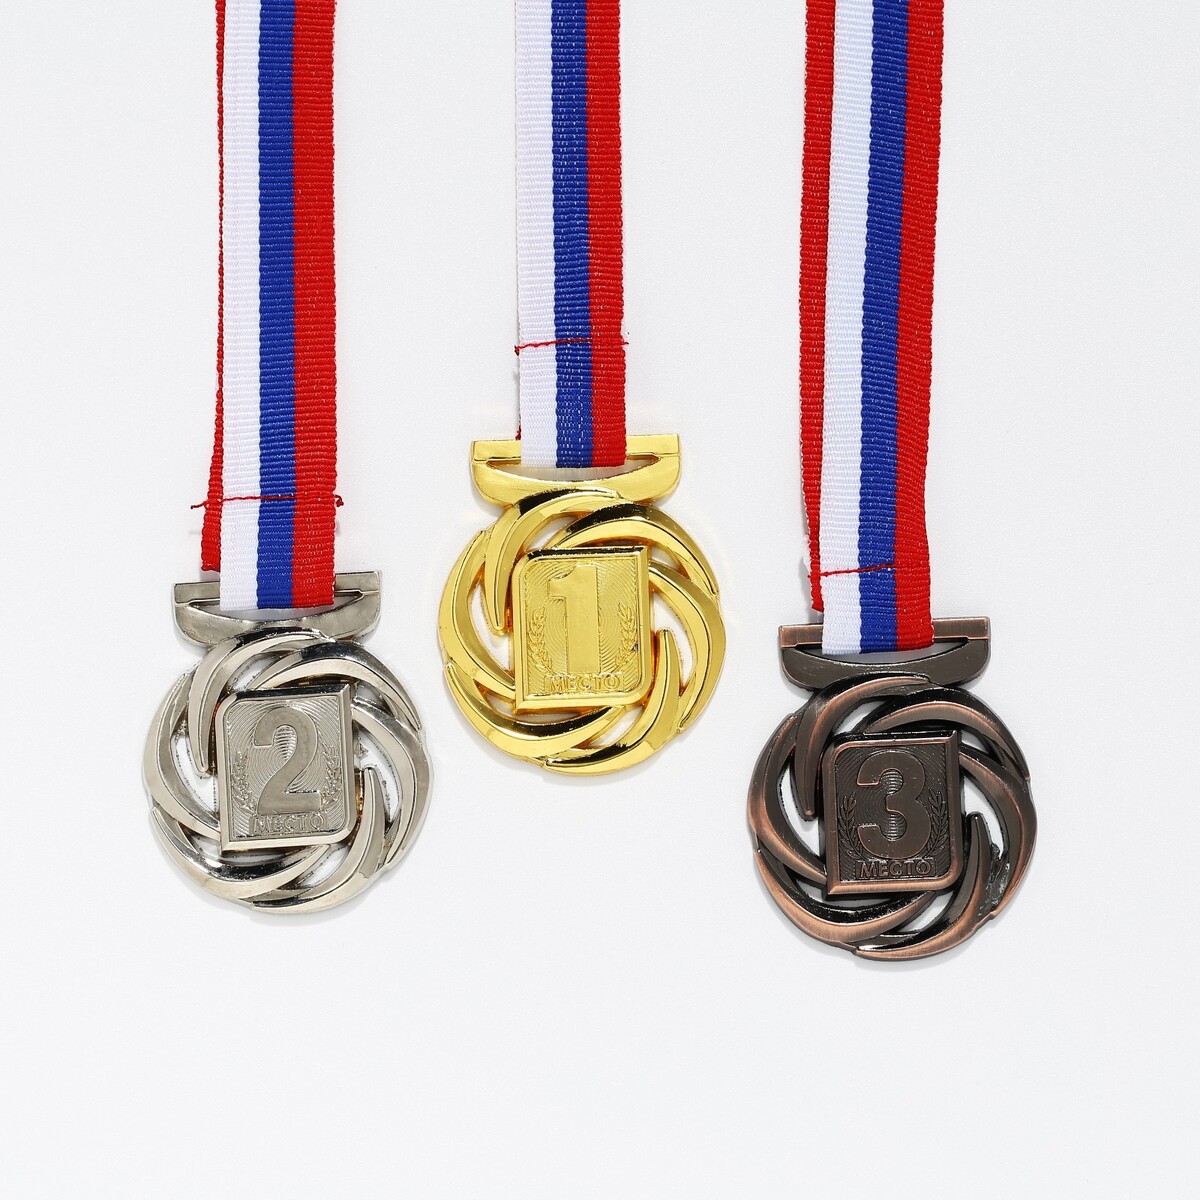 Медаль призовая 192 диам 4 см. 3 место. цвет бронз. с лентой медаль призовая 192 диам 4 см 3 место бронз с лентой